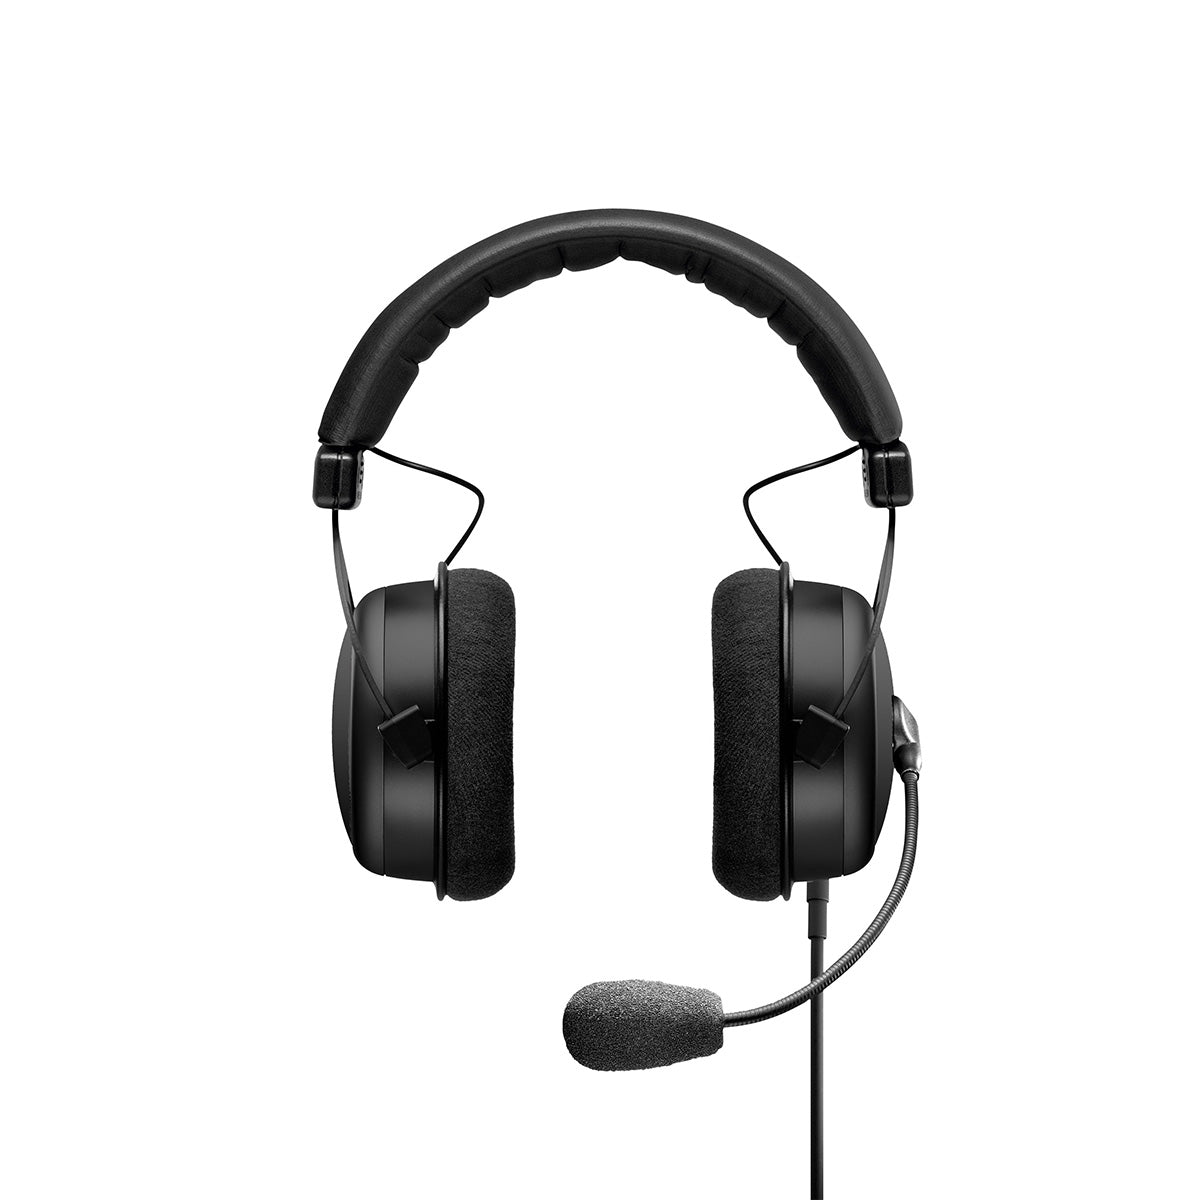 Beyerdynamic MMX 300 Premium Gaming Headset